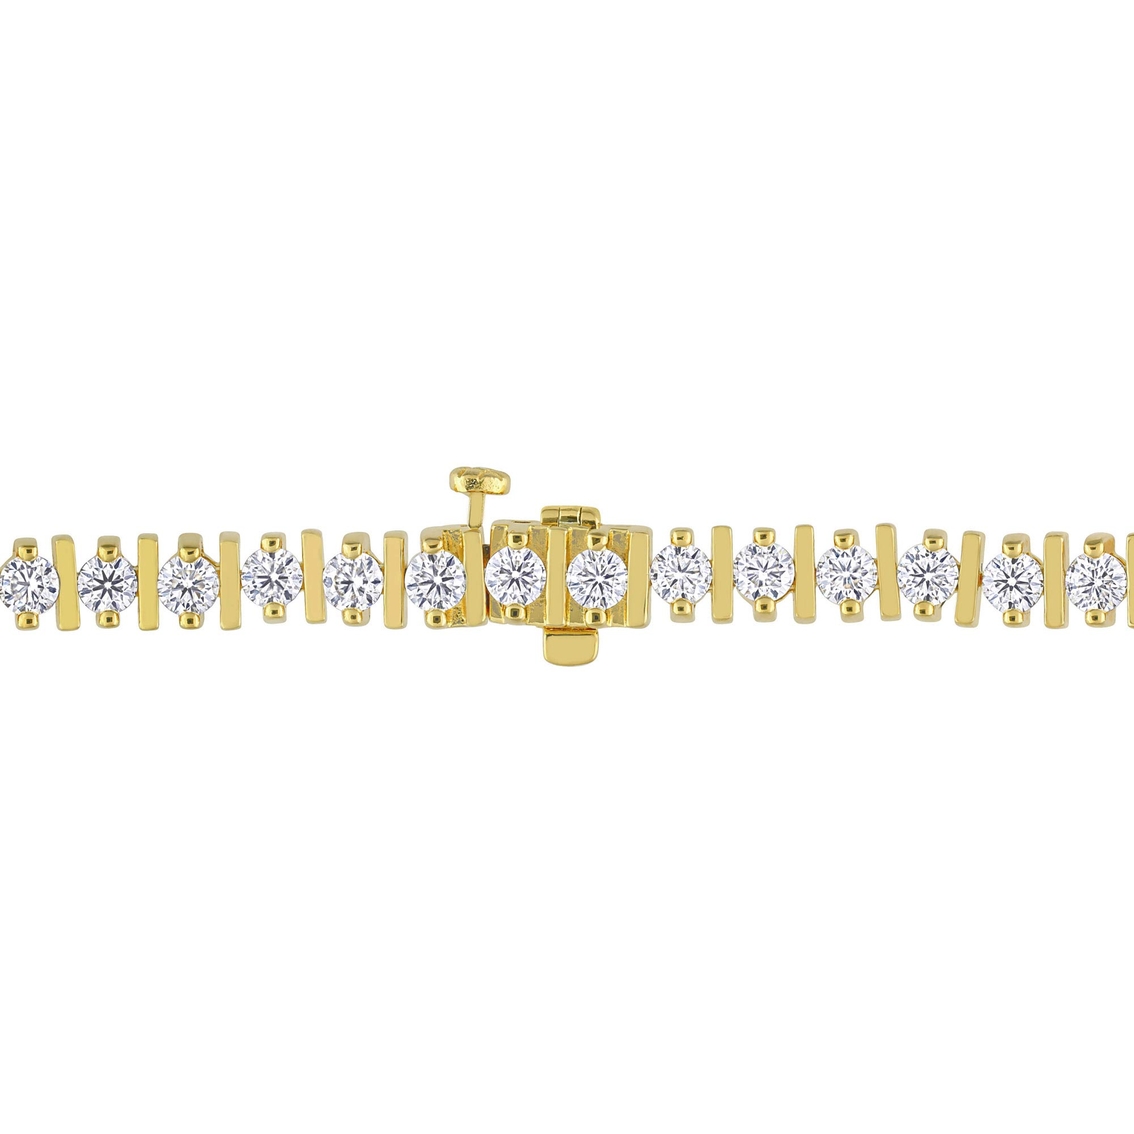 Sofia B. 18K Gold Over Sterling Silver 4 1/2 CTW Moissanite Bar Tennis Bracelet - Image 2 of 4